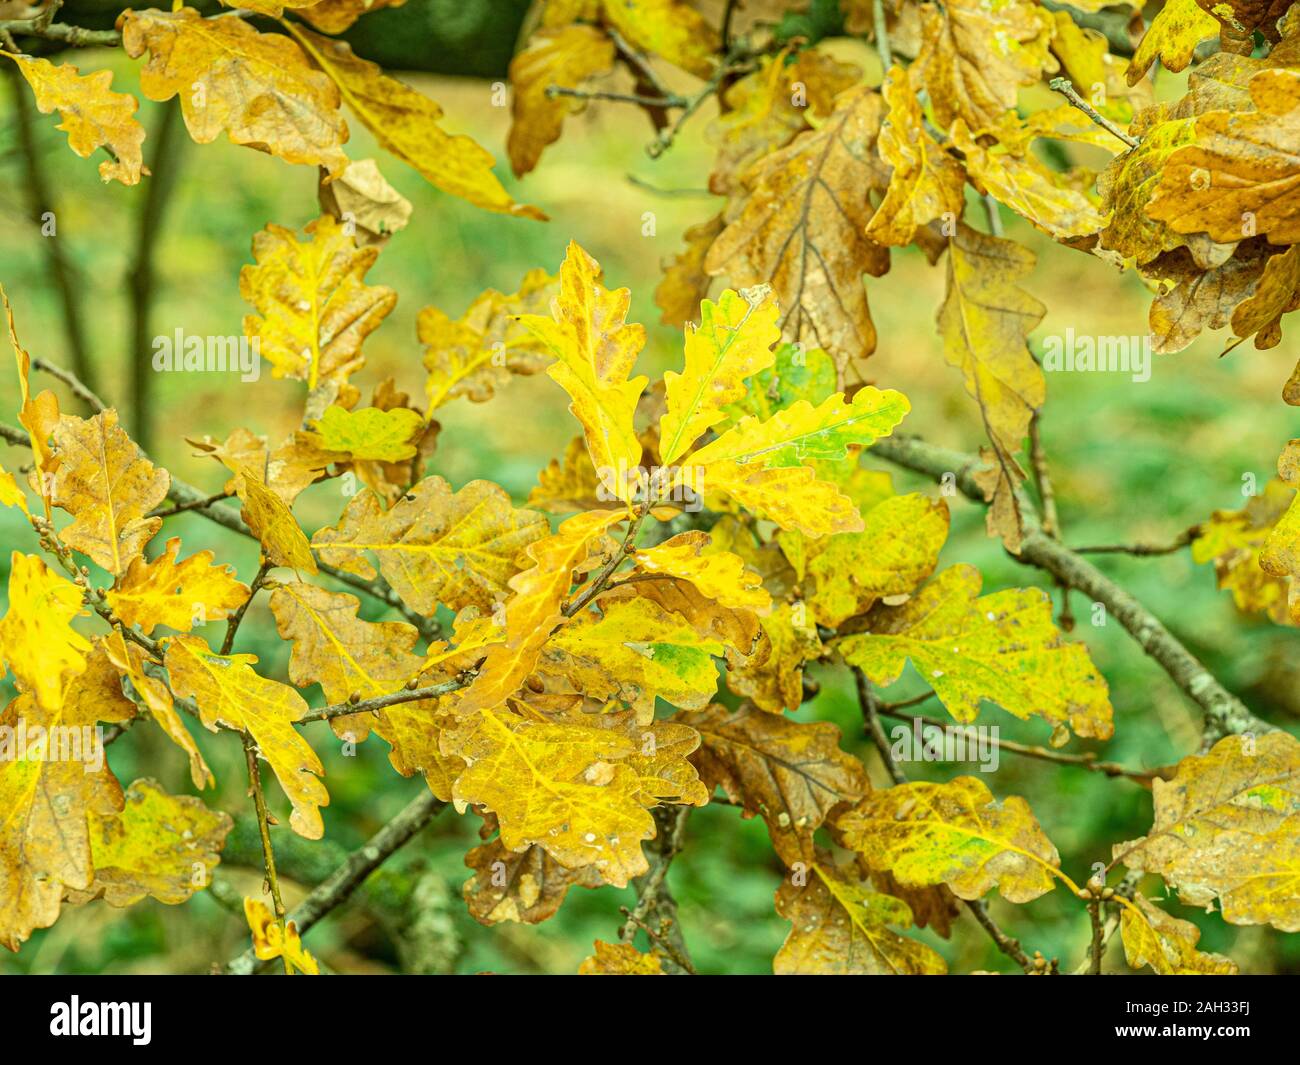 Autumn woodland scene. Stock Photo